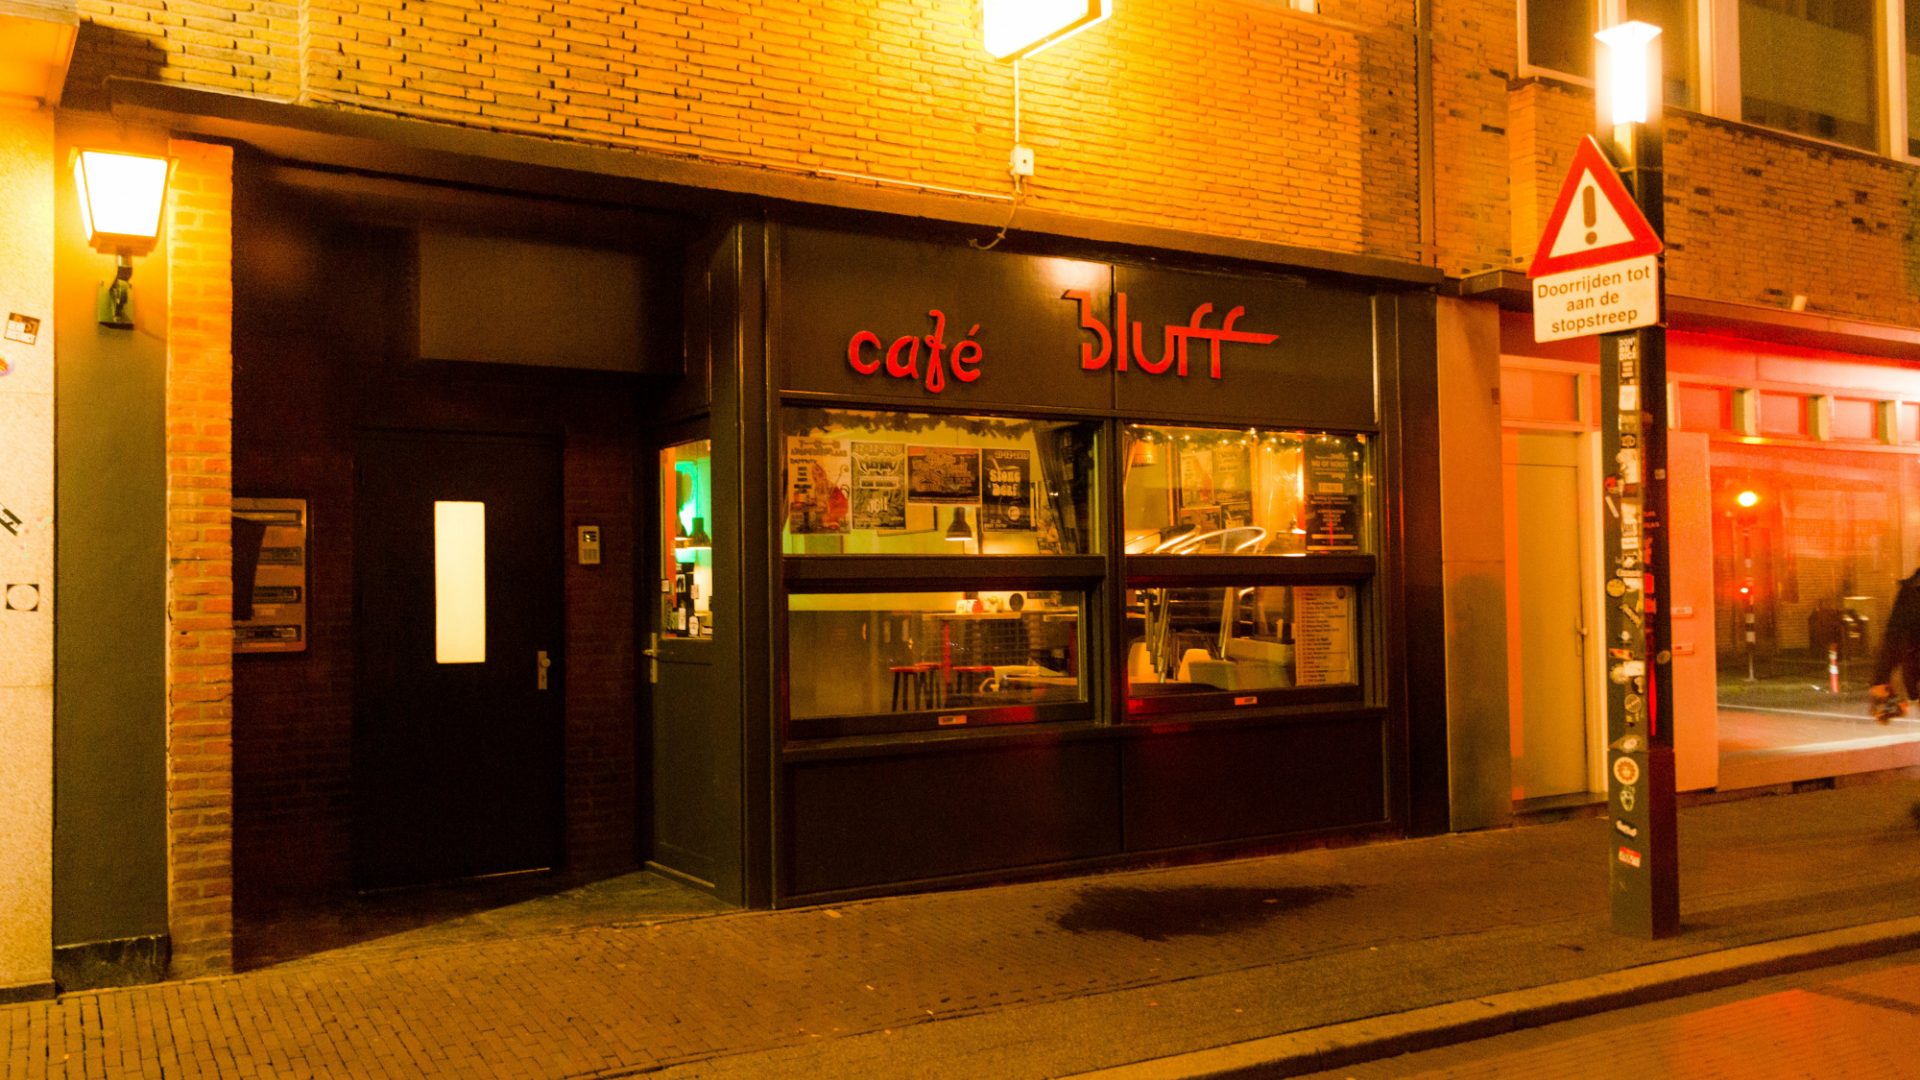 Café Bluff